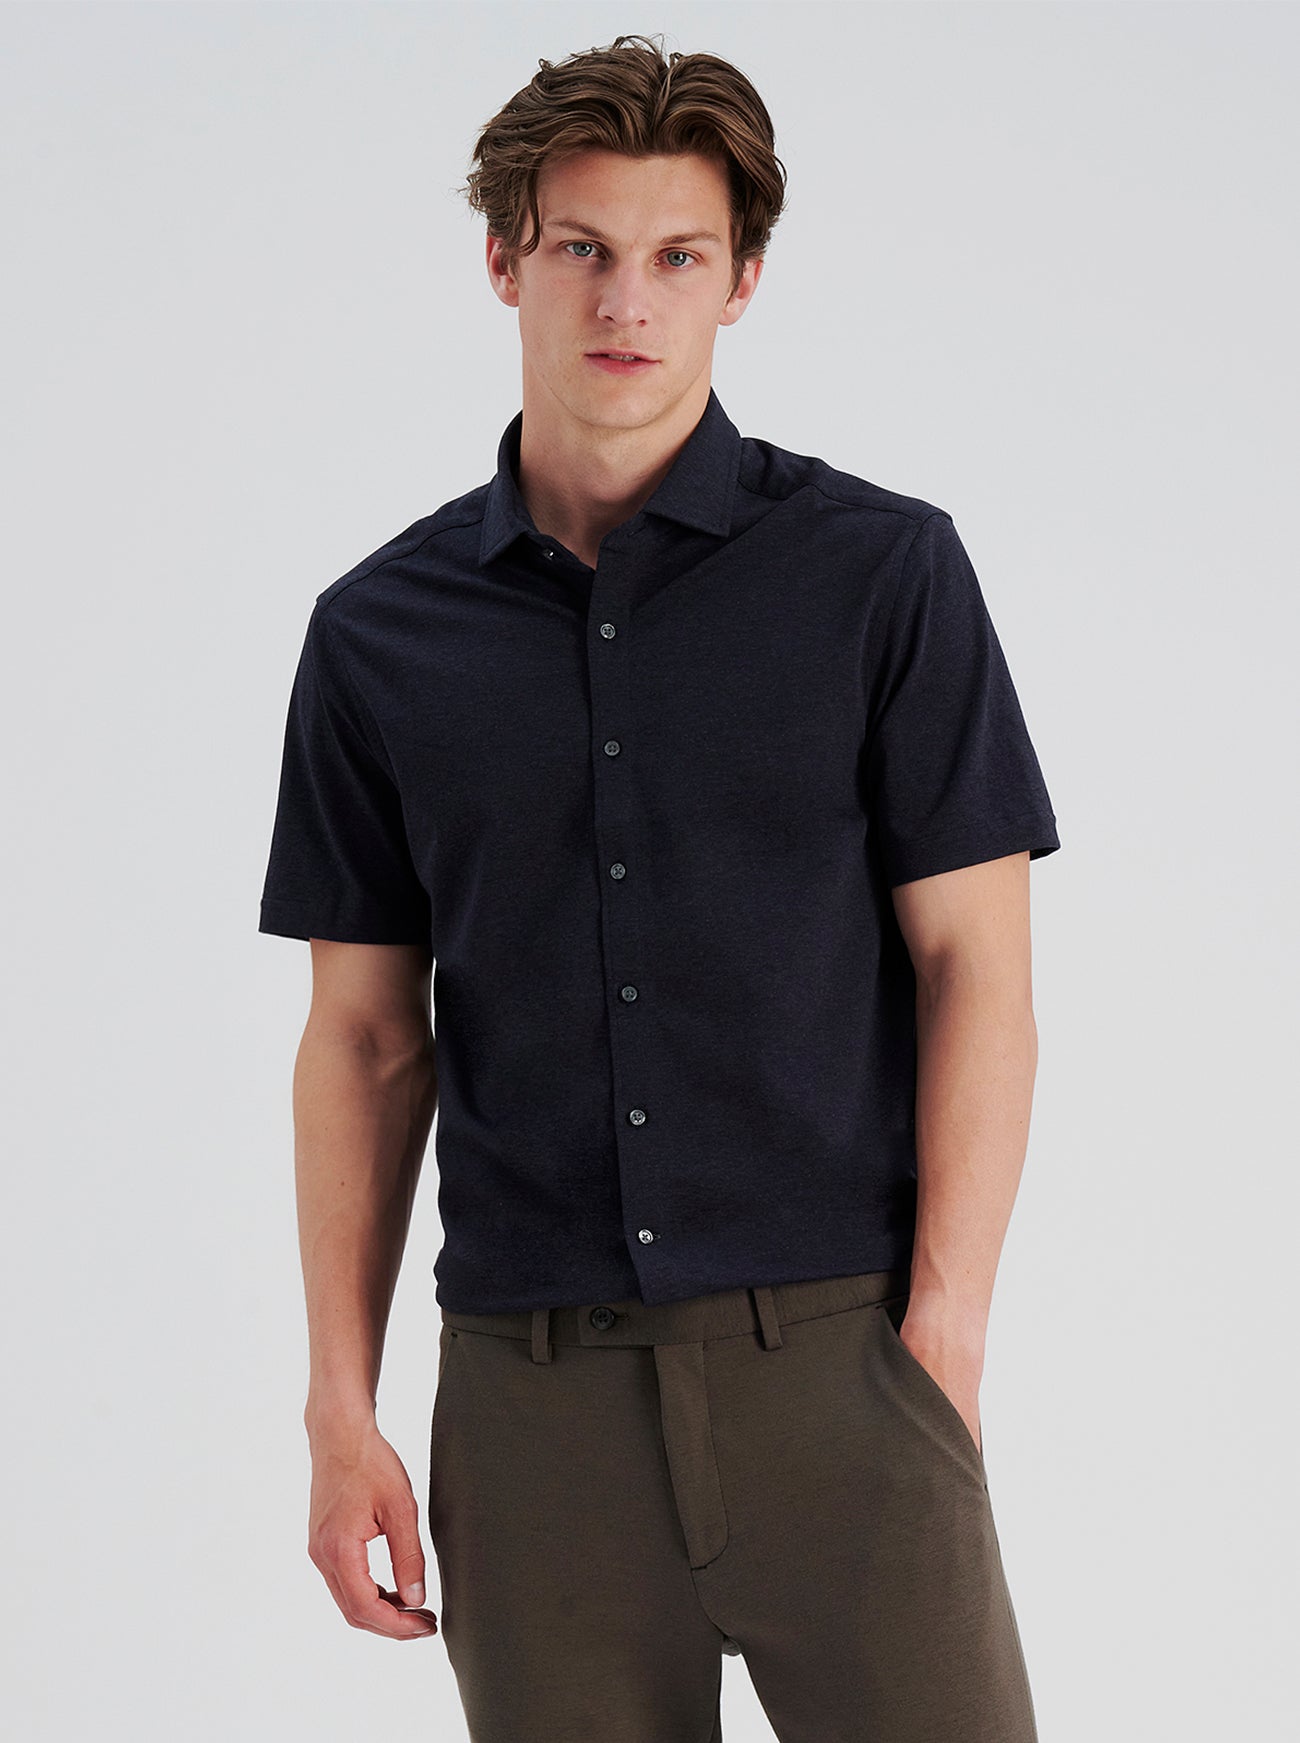 Short Sleeve Knit Shirt, Slim Fit Button Down Men's Shirt, 100